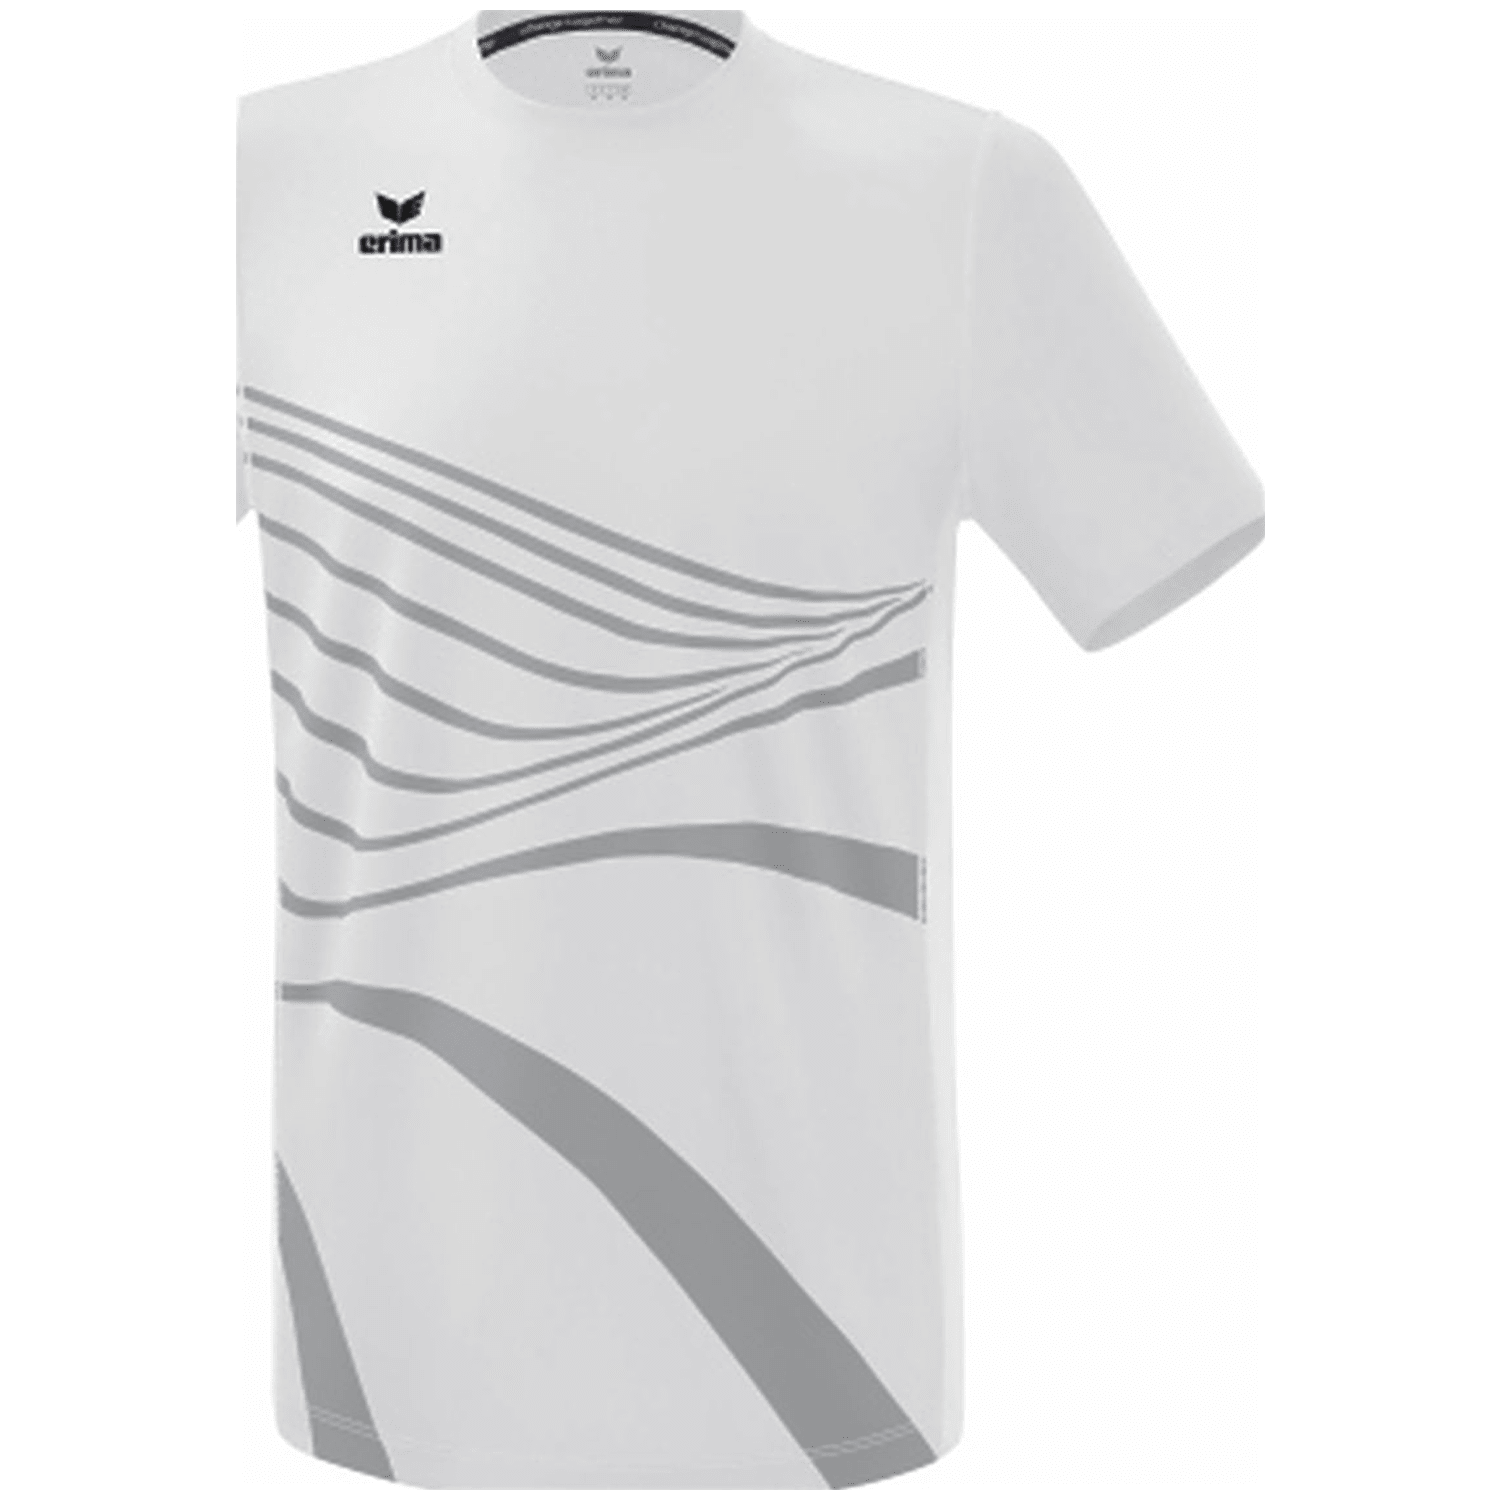 Erima Racing Kinder T-Shirt